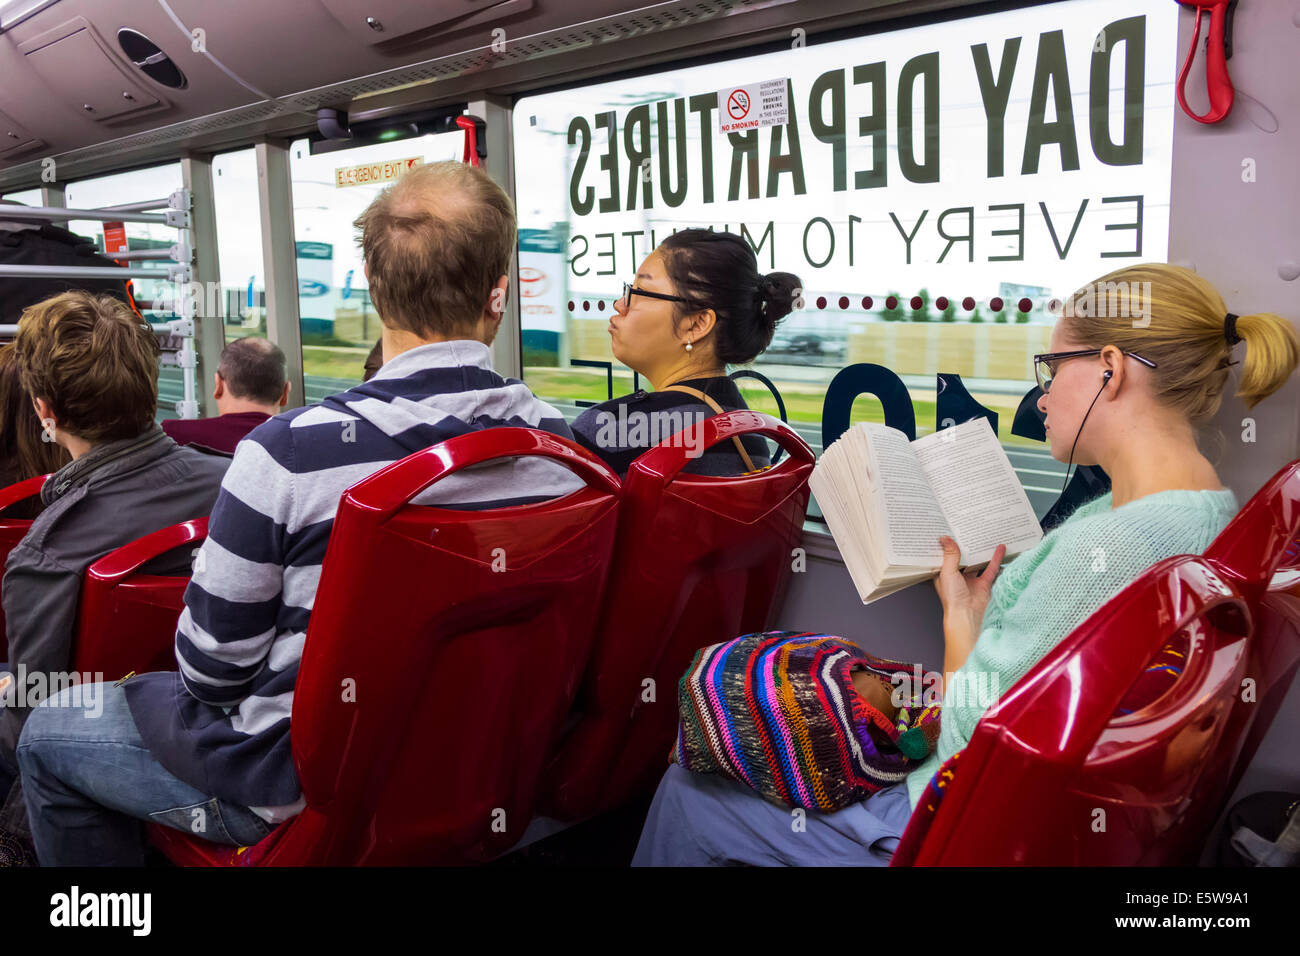 Melbourne Australien, Skybus, Flughafenbus, Reisebus, Innenraum, Passagierpassagiere Fahrer, Reiter, asiatische Frau weibliche Frauen, Mann Männer männlich, Ohrstöpsel, sma Stockfoto